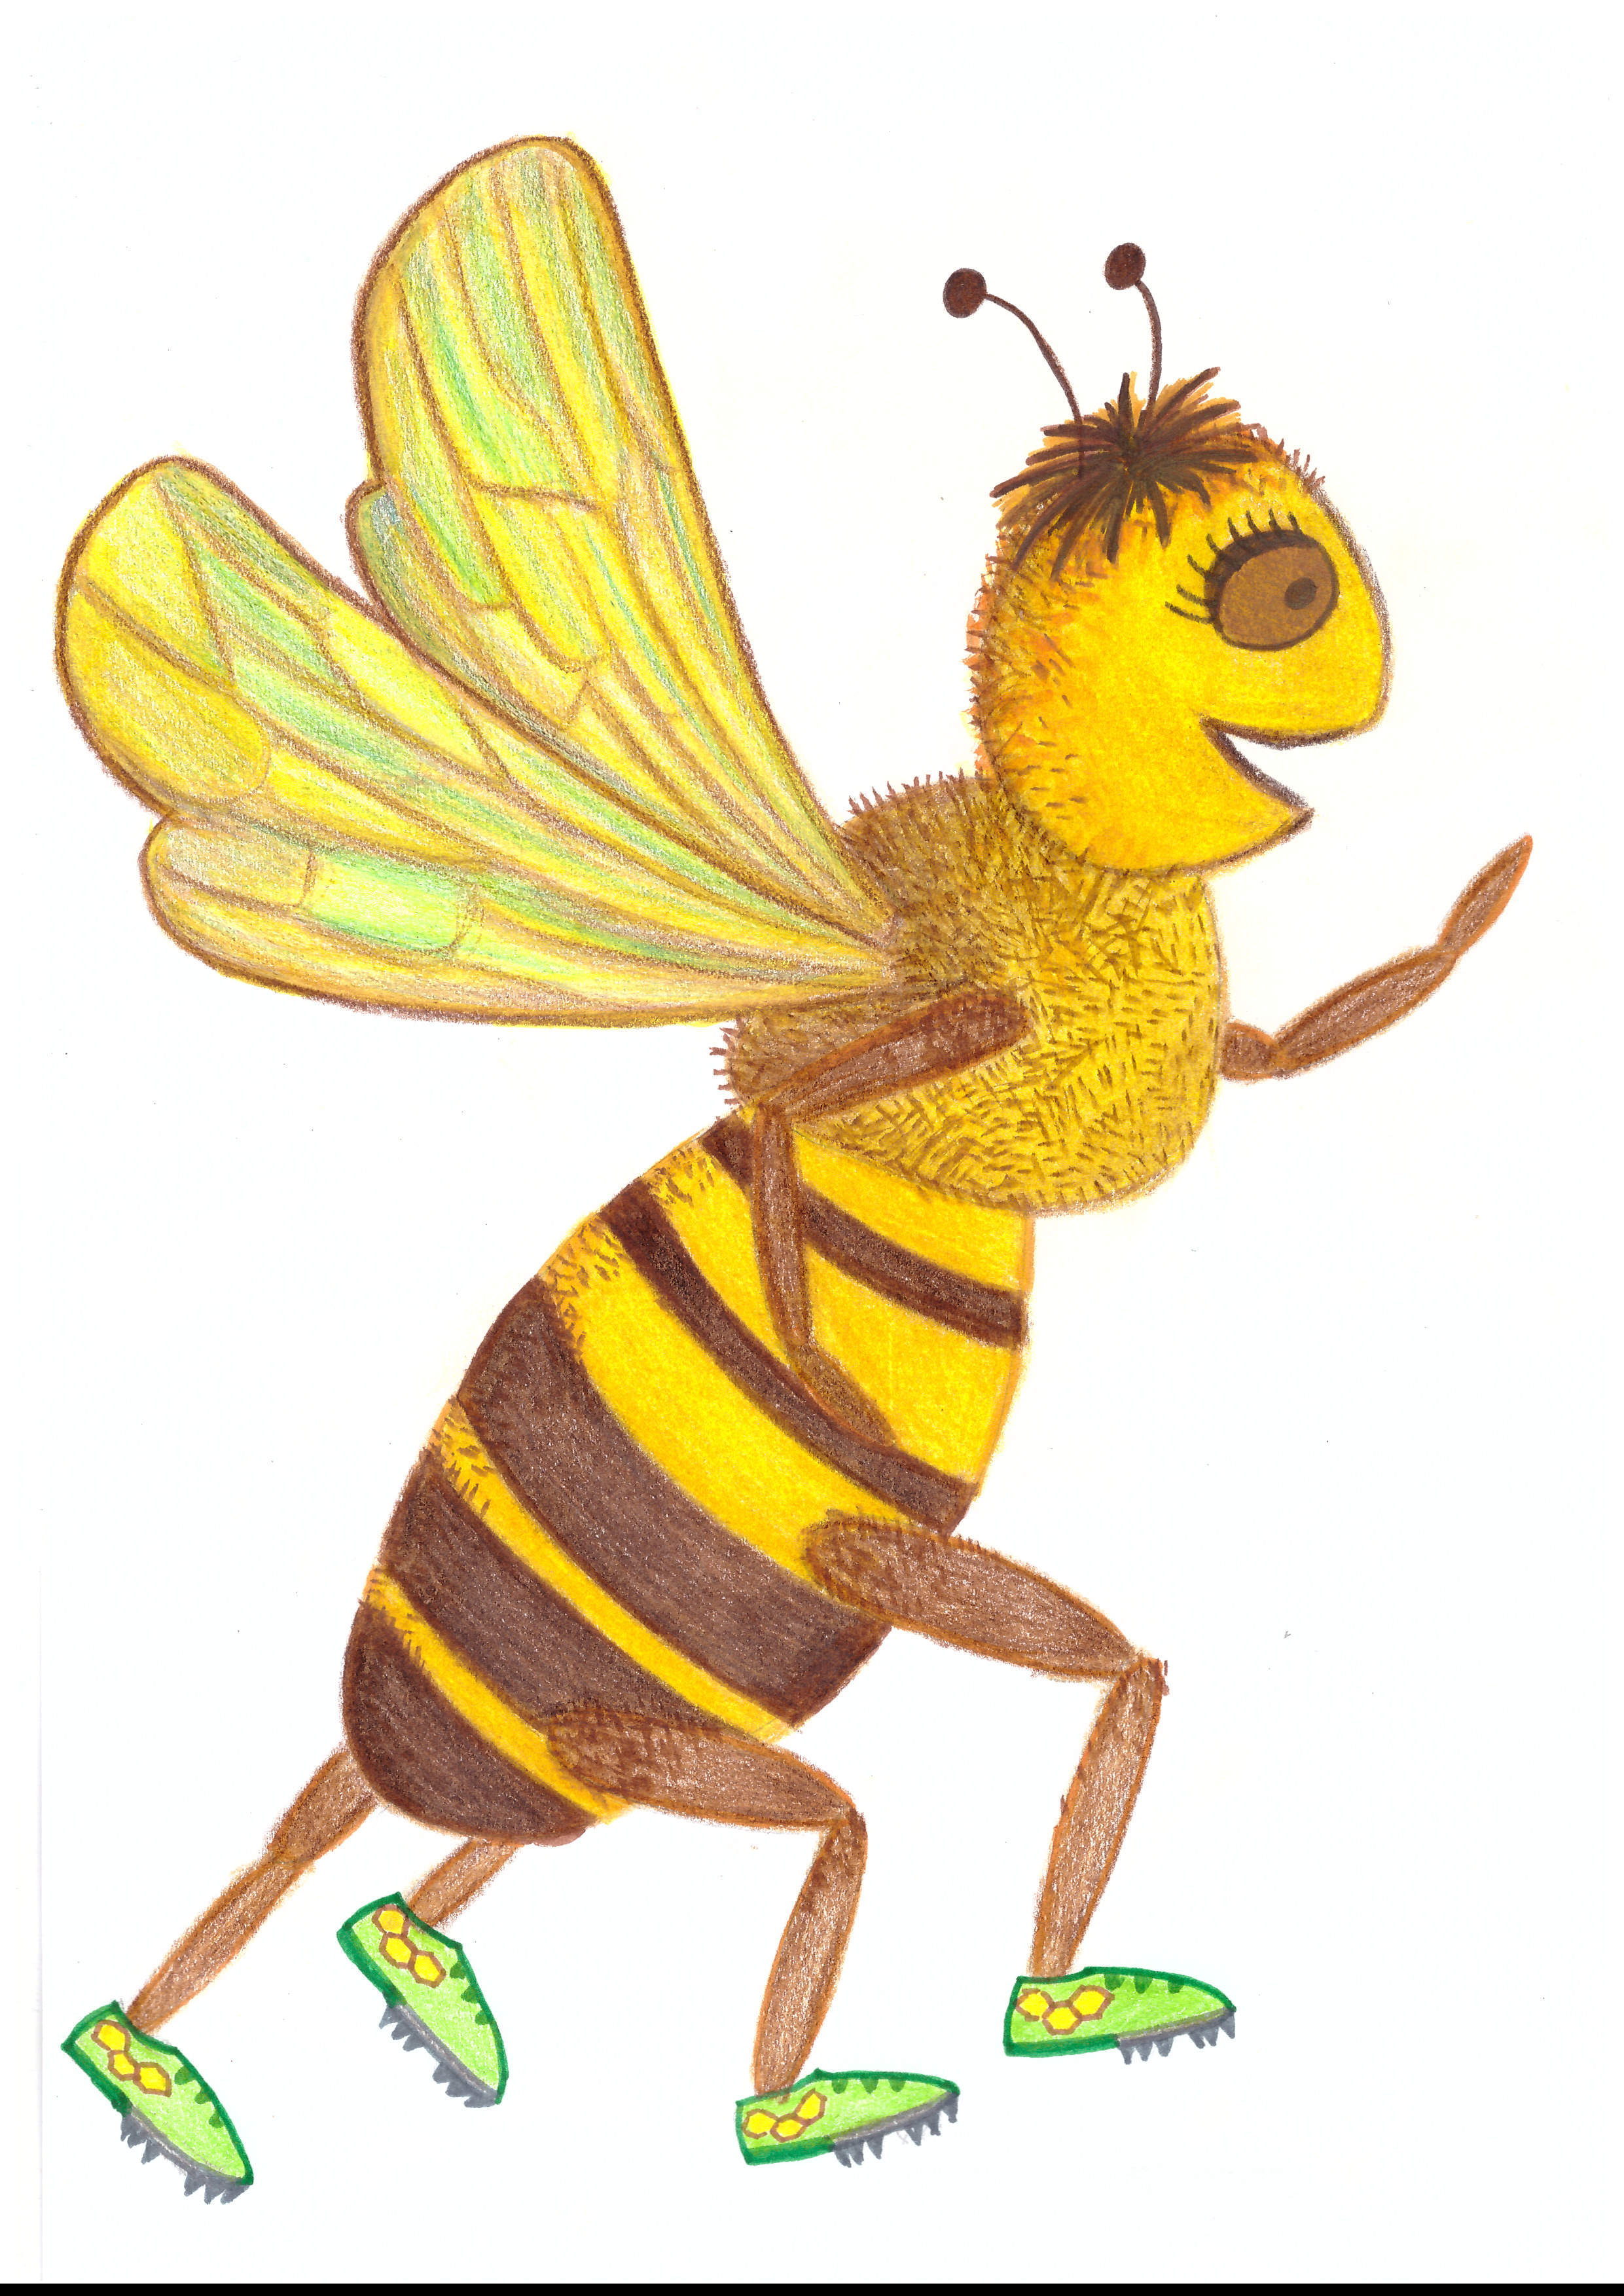 edeli ste, že na 1 gram medu musí včela navštíviť asi 3000 kvetov a letí pritom rýchlosťou viac ako 20 km/h? Za celý život nazbiera asi 9 g medu - čo je jedna kávová lyžička. Včela žije počas znášky 6 týždňov.        Aby včely nazbierali 1 kg medu, musia navštíviť až 3 milióny kvetov. A nalietajú pritom vzdialenosť rovnajúcu sa ceste 4x okolo Zeme.